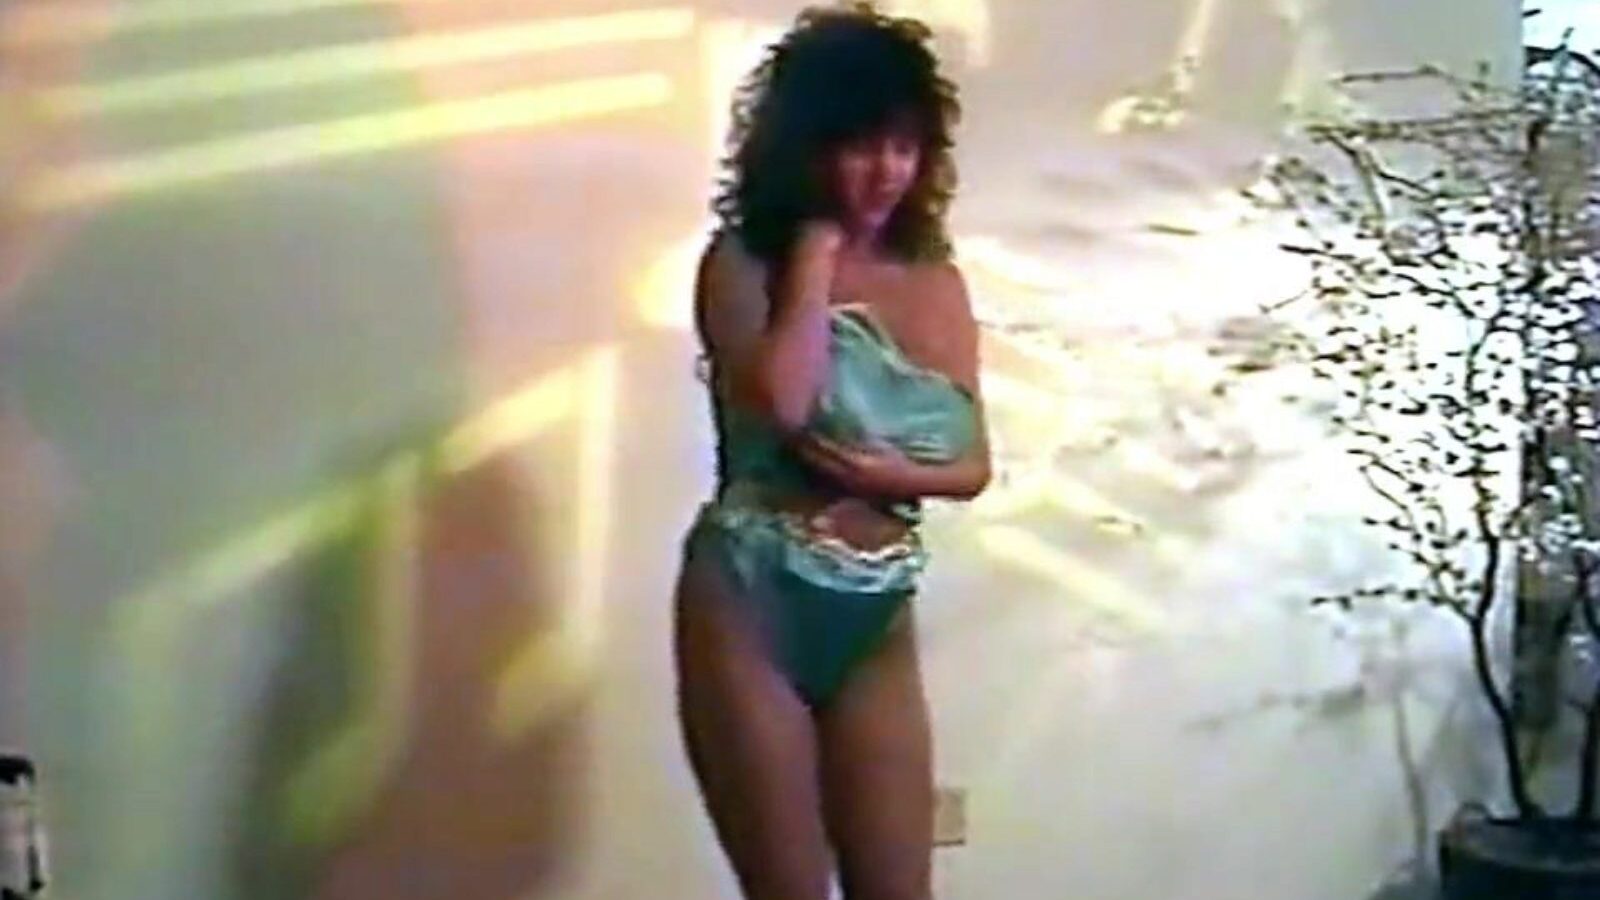 obsesja - taniec striptizu w bieliźnie z lat 80-tych i obsesja na punkcie zegarka - taniec striptizu w bieliźnie z lat 80-tych z dużymi cyckami film na xhamster - ostateczna baza danych z brytyjskimi cyckami typu free-for-all, duże klipy pornograficzne w jakości HD